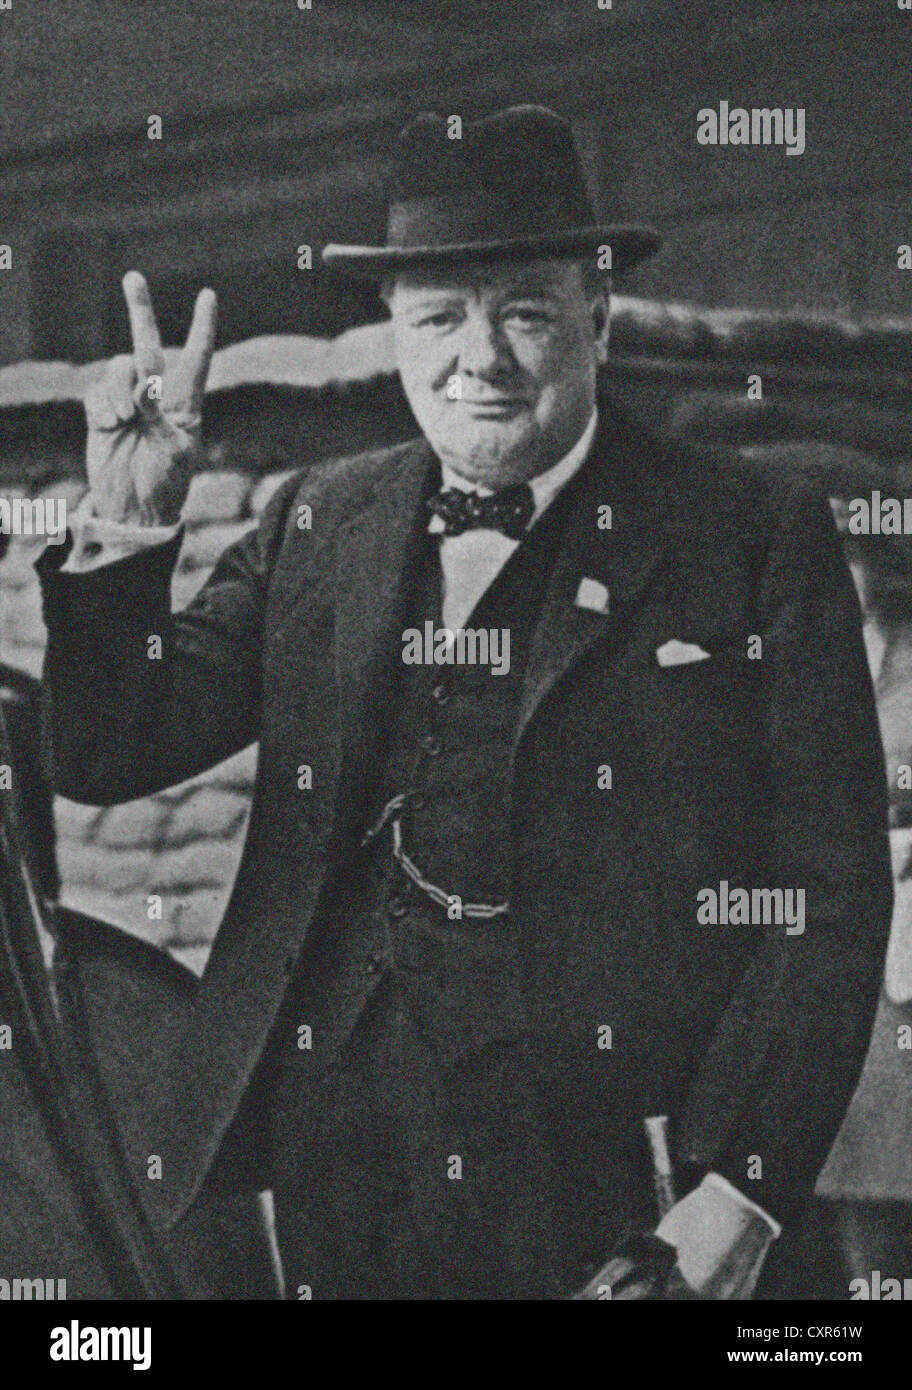 Chef de guerre britannique Winston Churchill avec son célèbre signe V de la victoire. Droit de la Presse Archives de presse Portrait Portrait (anciennement appelé Service Bureau) 1941 libre Banque D'Images